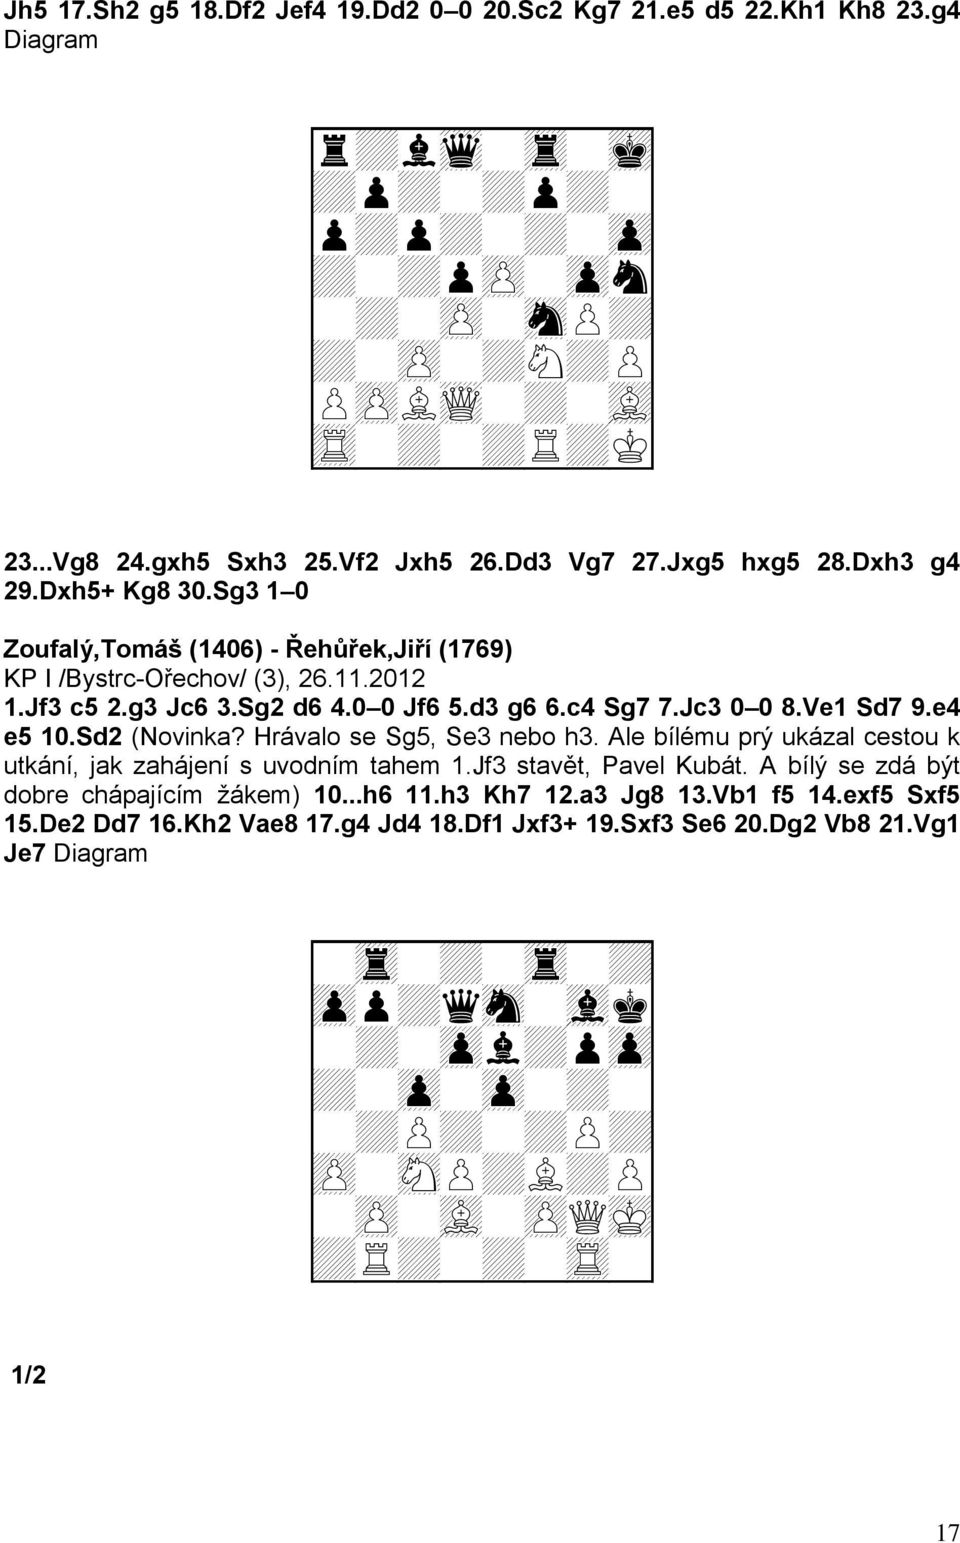 0 0 Jf6 5.d3 g6 6.c4 Sg7 7.Jc3 0 0 8.Ve1 Sd7 9.e4 e5 10.Sd2 (Novinka? Hrávalo se Sg5, Se3 nebo h3. Ale bílému prý ukázal cestou k utkání, jak zahájení s uvodním tahem 1.Jf3 stavět, Pavel Kubát.